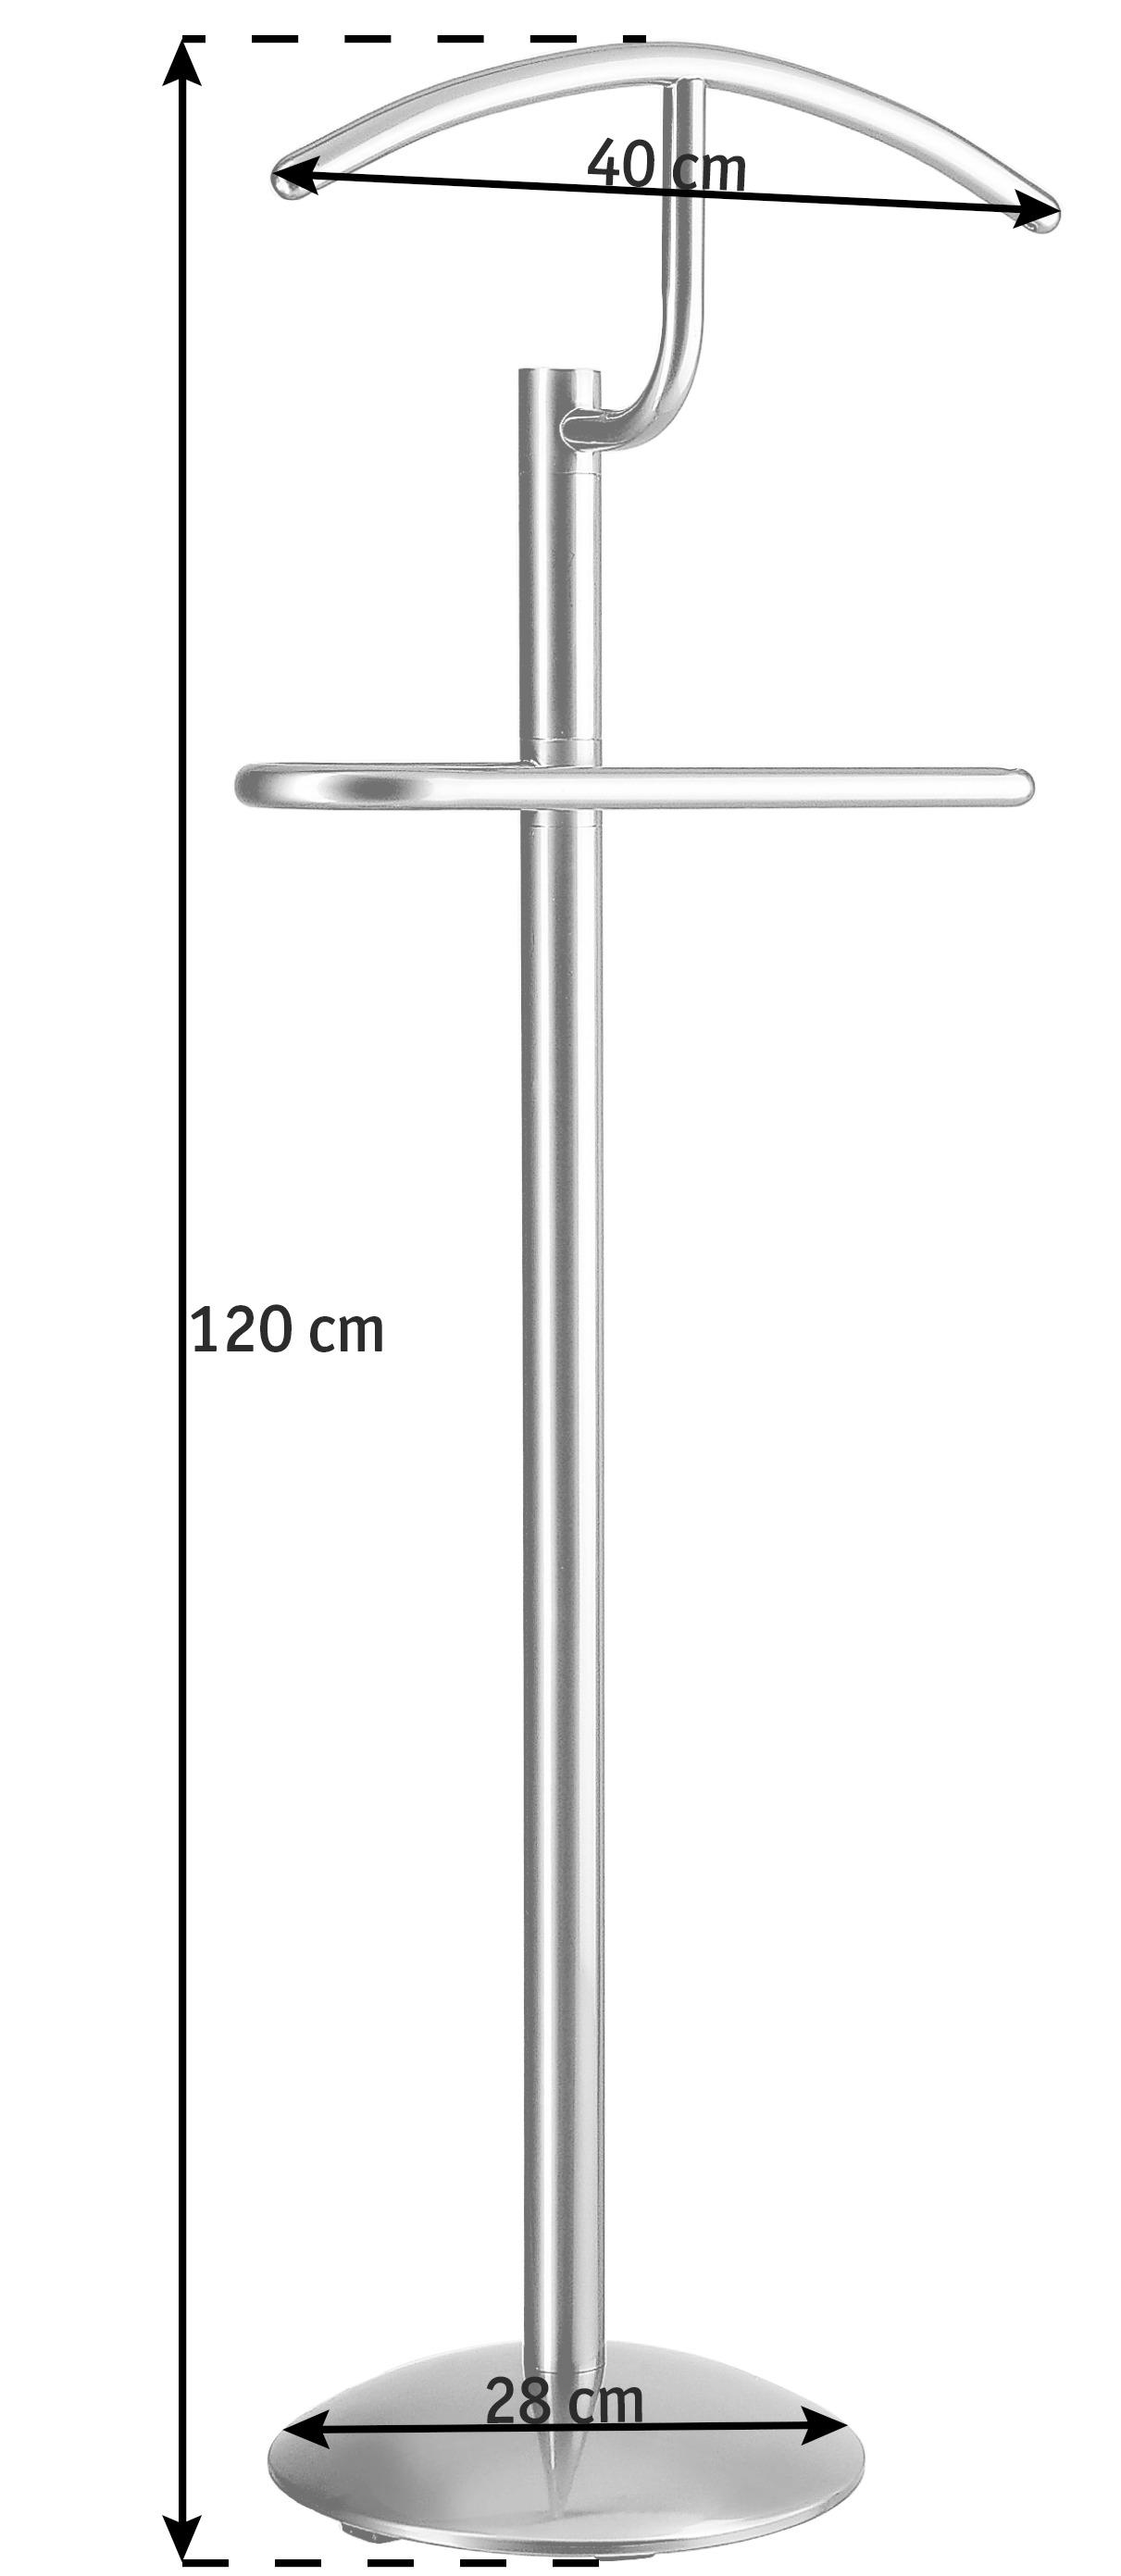 HERRENDIENER - Edelstahlfarben, Design, Metall (40/120/28cm) - Boxxx